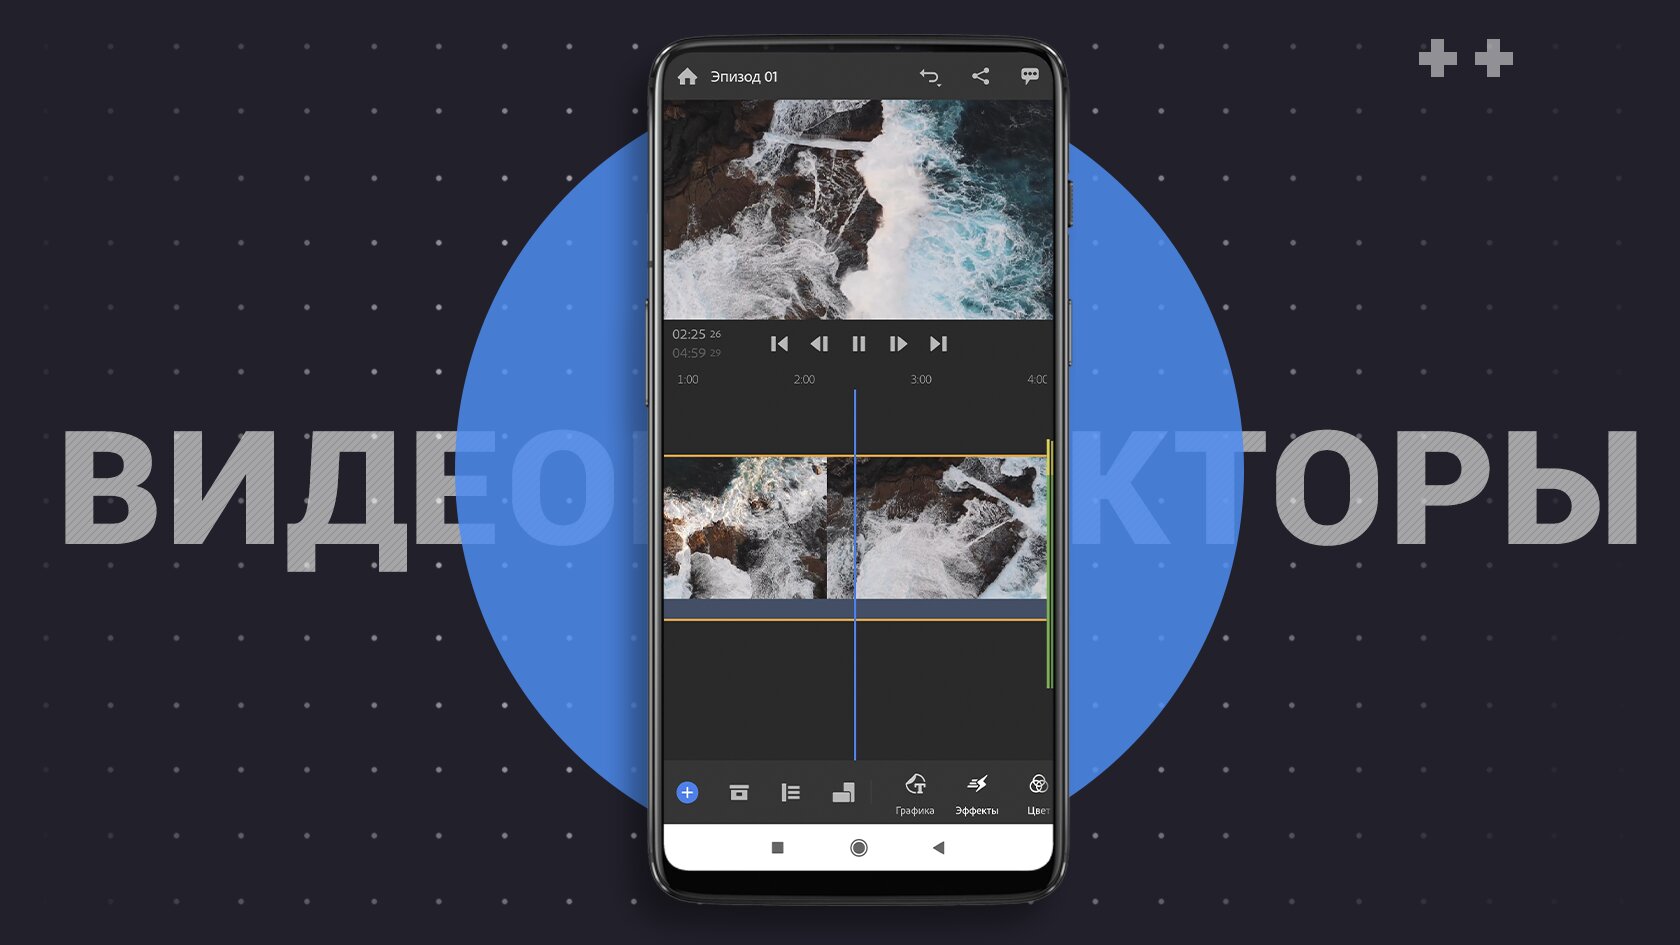 Автоматическое сохранение фото и видео с помощью OneDrive для Android